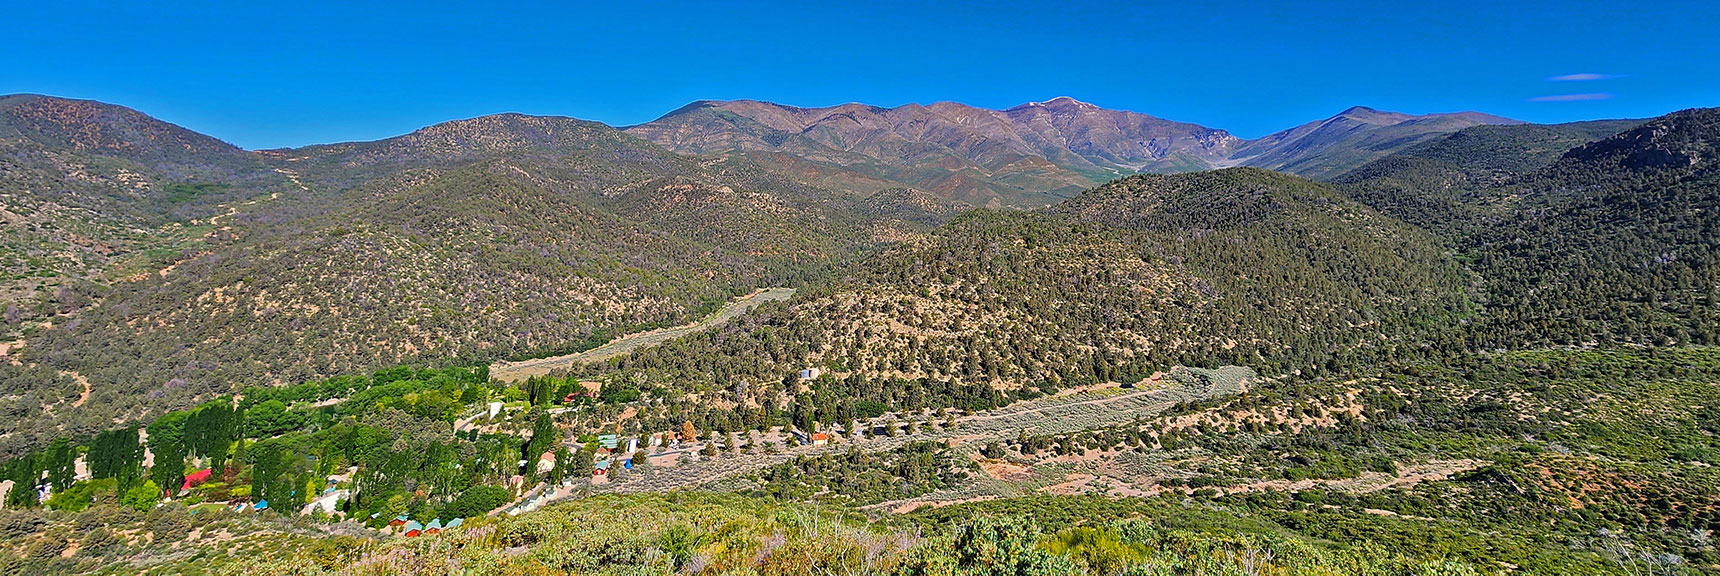 Torino Ranch Children's Camp Below Approach Ridge. | Wilson Ridge South High Point | Lovell Canyon, Nevada